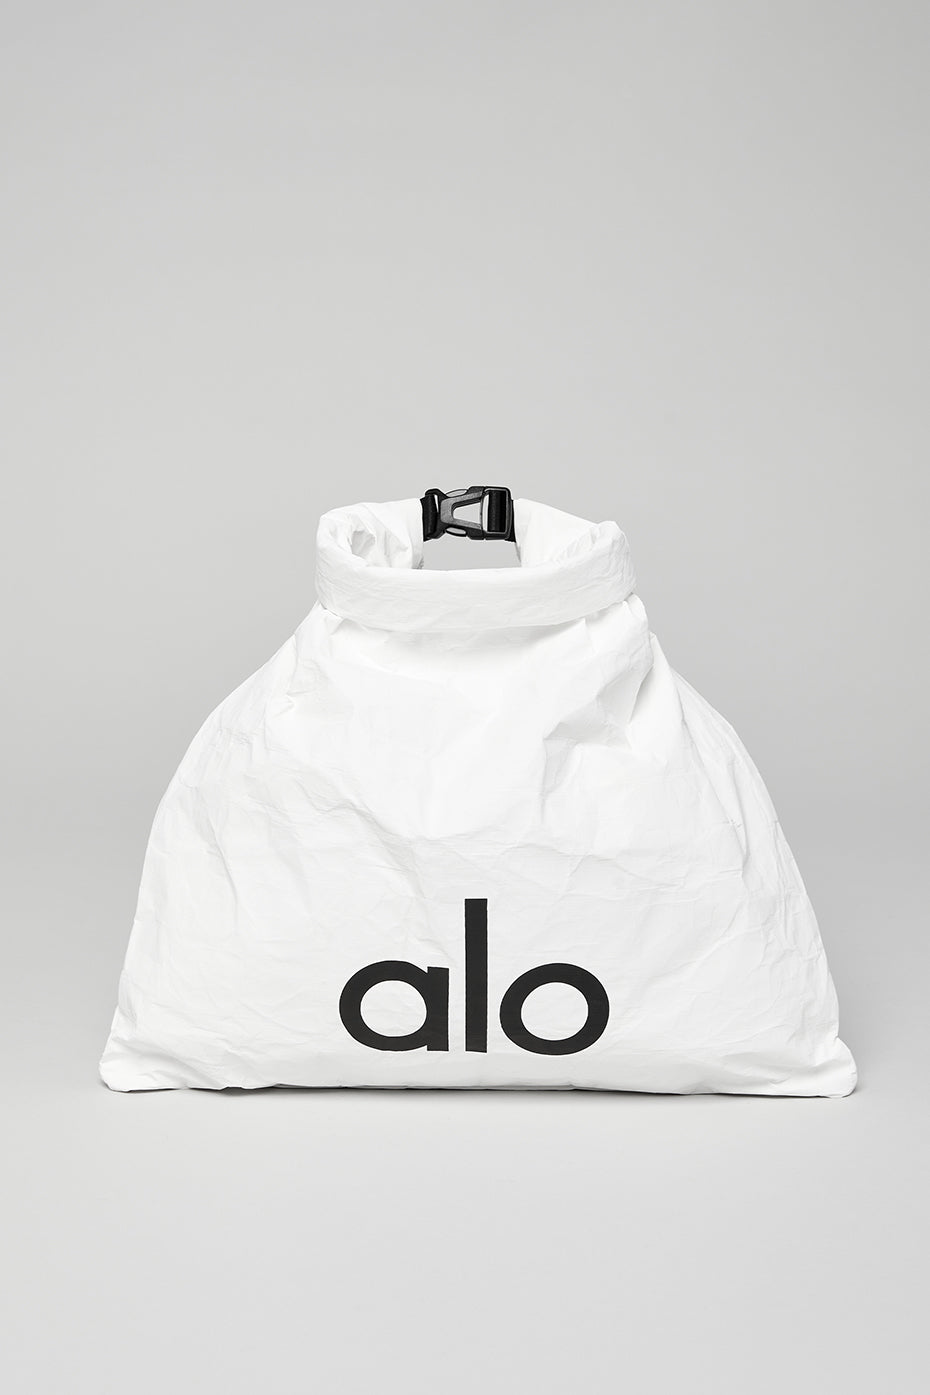 🛍️ Yeni Alo Yoga Tote Bag ve Bra modelleri Yogazero'da! Alo Shopper Tote